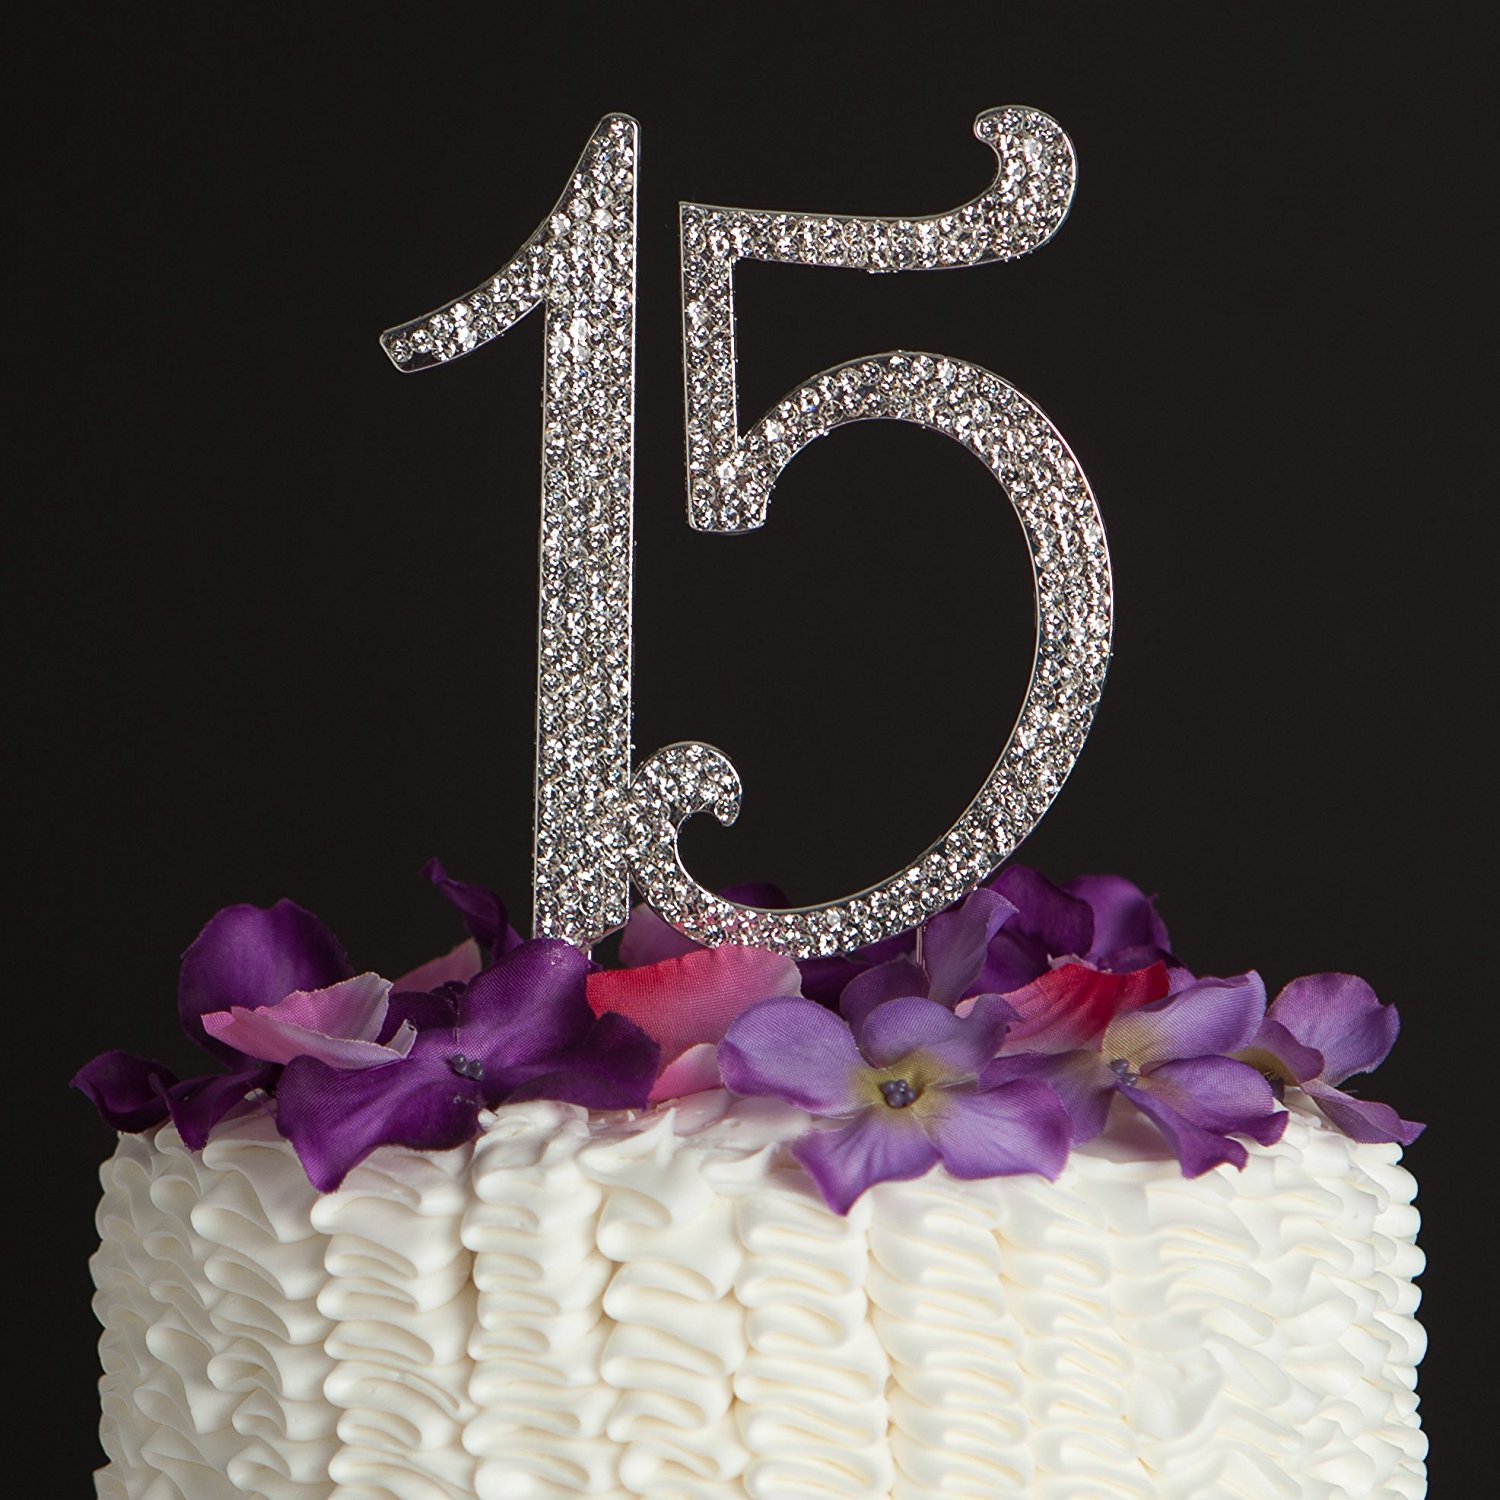 Открытки с днем рождения девушке 19 лет. Торт на день рождения 15 лет. Тортик цифры 15. С днём рождения 15 лет девушке. Торт для девочки 15 лет на день рождения.